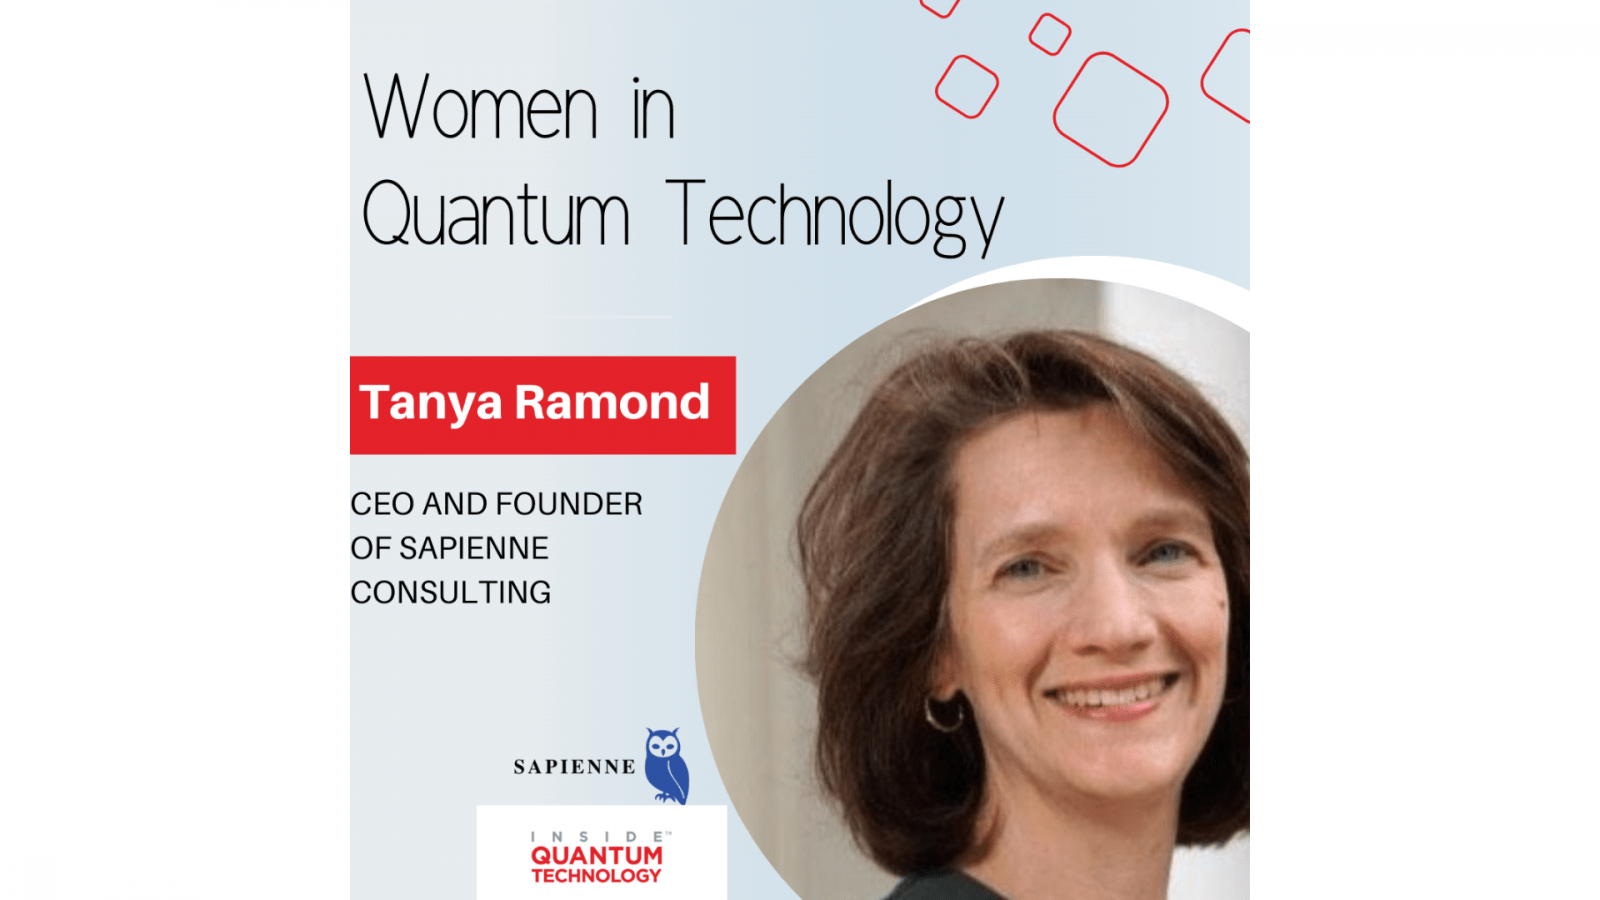 Sapienne Consulting의 CEO이자 창립자인 Tanya Ramond가 양자 산업에 대한 자신의 역사와 여정에 대해 이야기합니다.